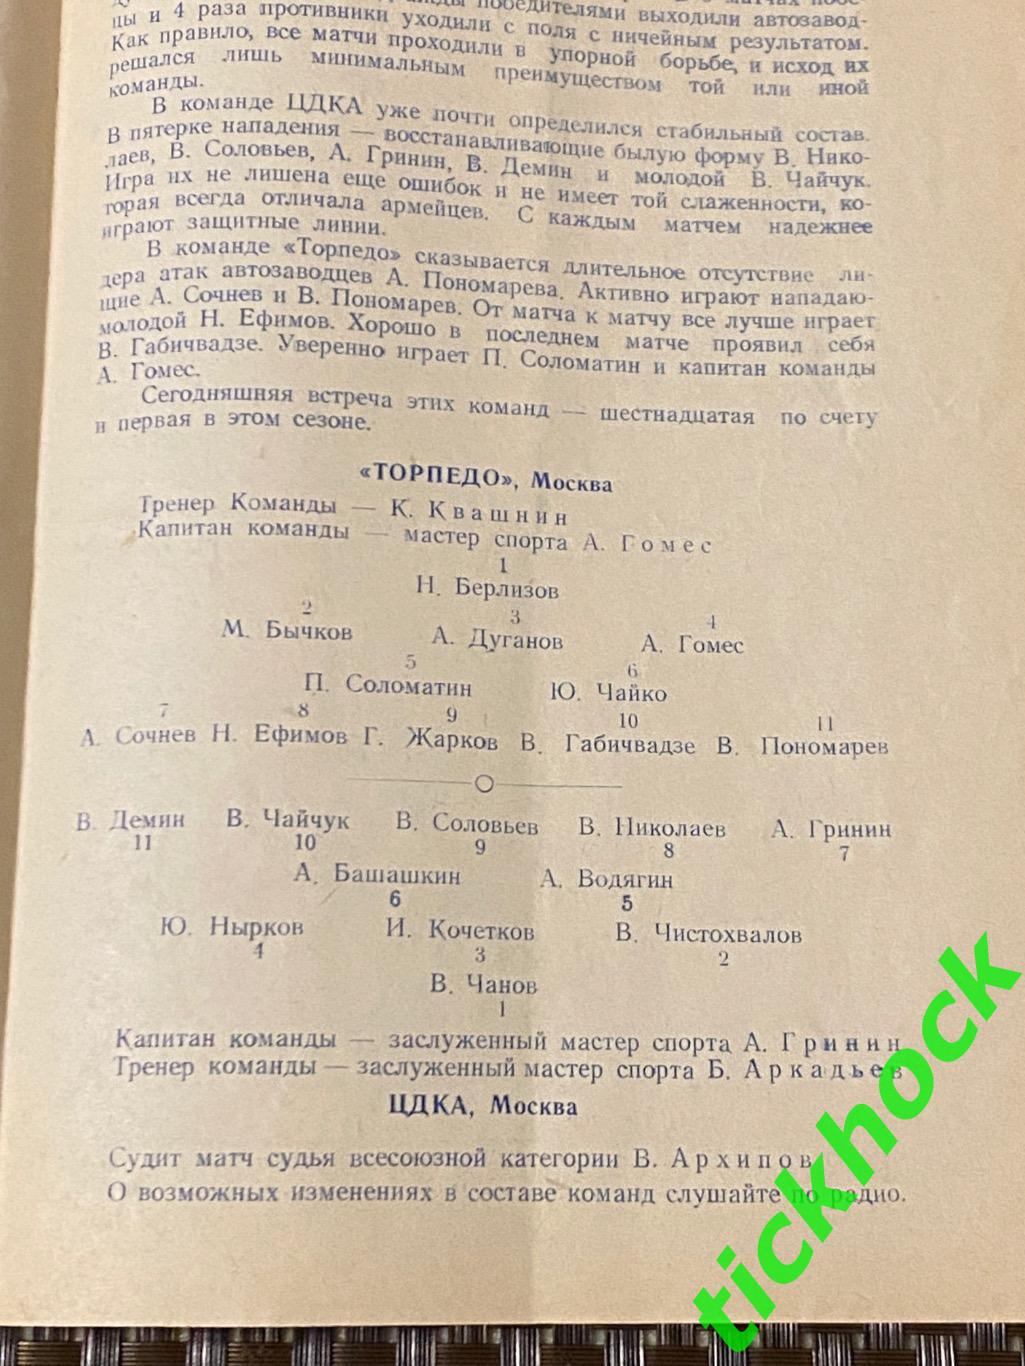 1950 Торпедо Москва - ЦДКА / ЦСКА 29.05.1950. Первенство СССР 1